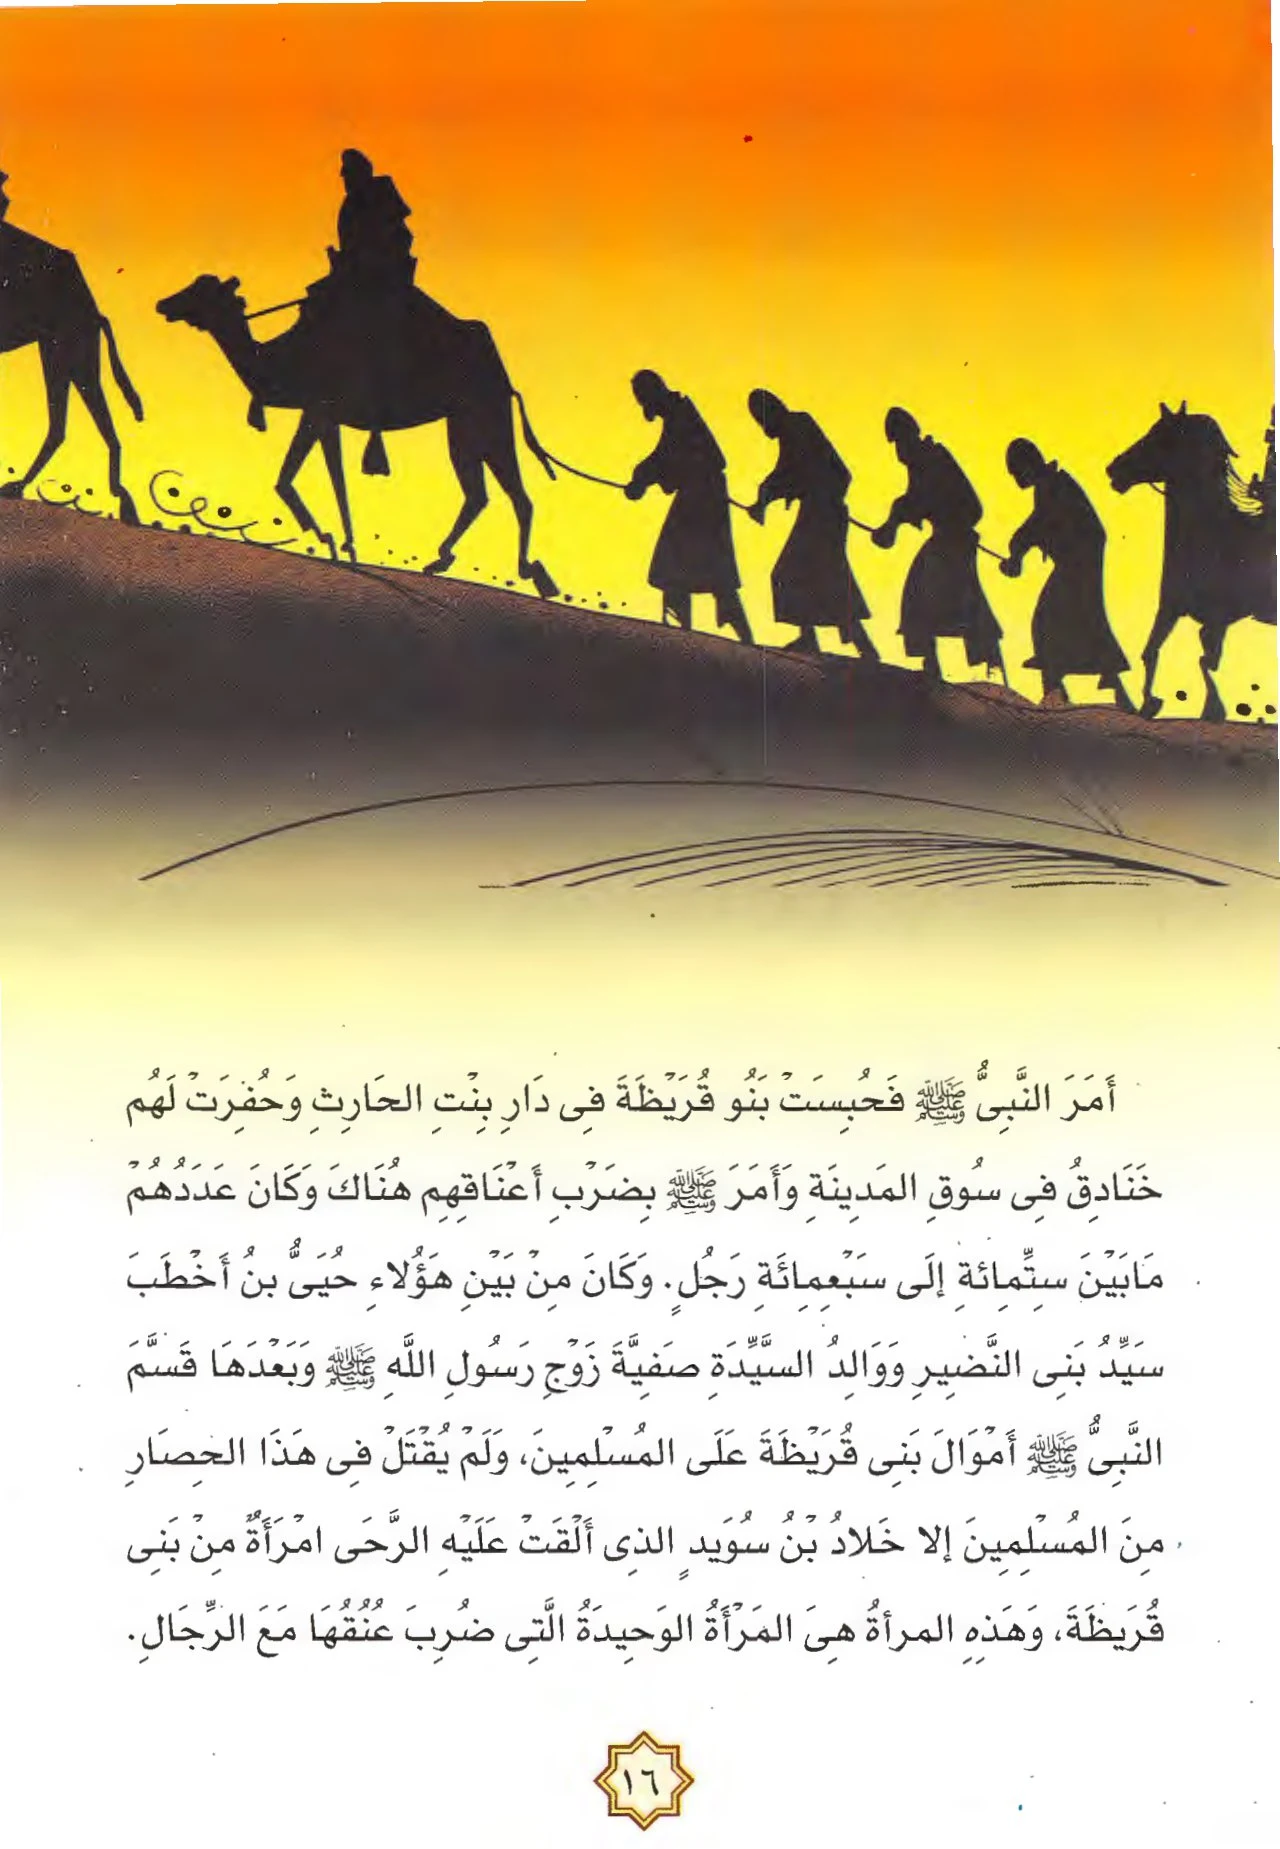 سلسلة حياة النبي صل الله عليه وسلم الجزء التاسع مؤامرة الأحزاب  pdf تحميل مجاني